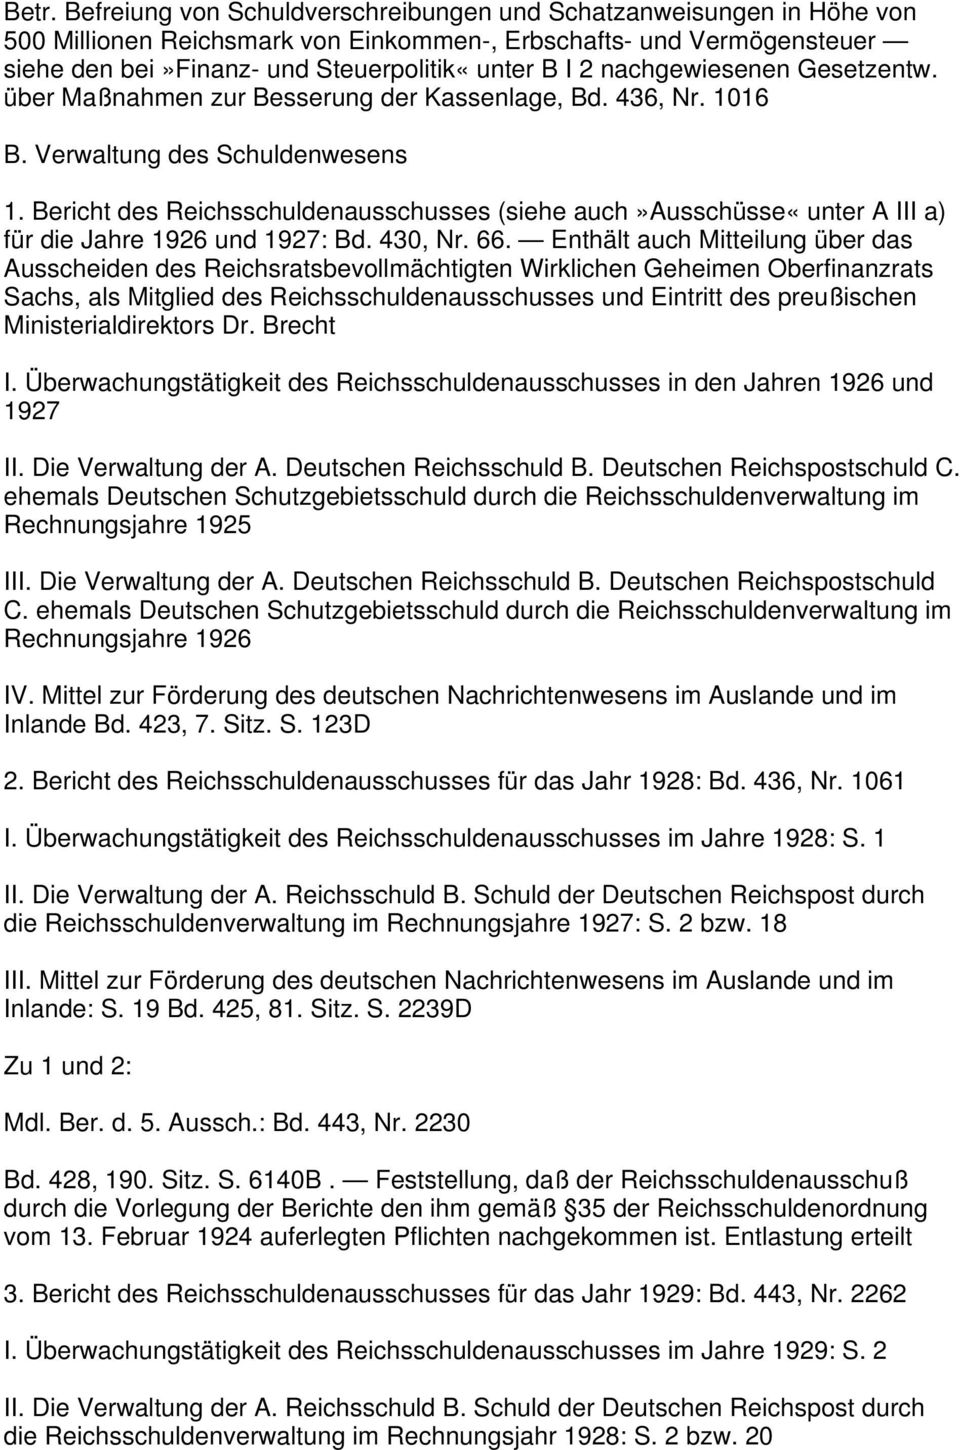 Bericht des Reichsschuldenausschusses (siehe auch»ausschüsse«unter A III a) für die Jahre 1926 und 1927: Bd. 430, Nr. 66.